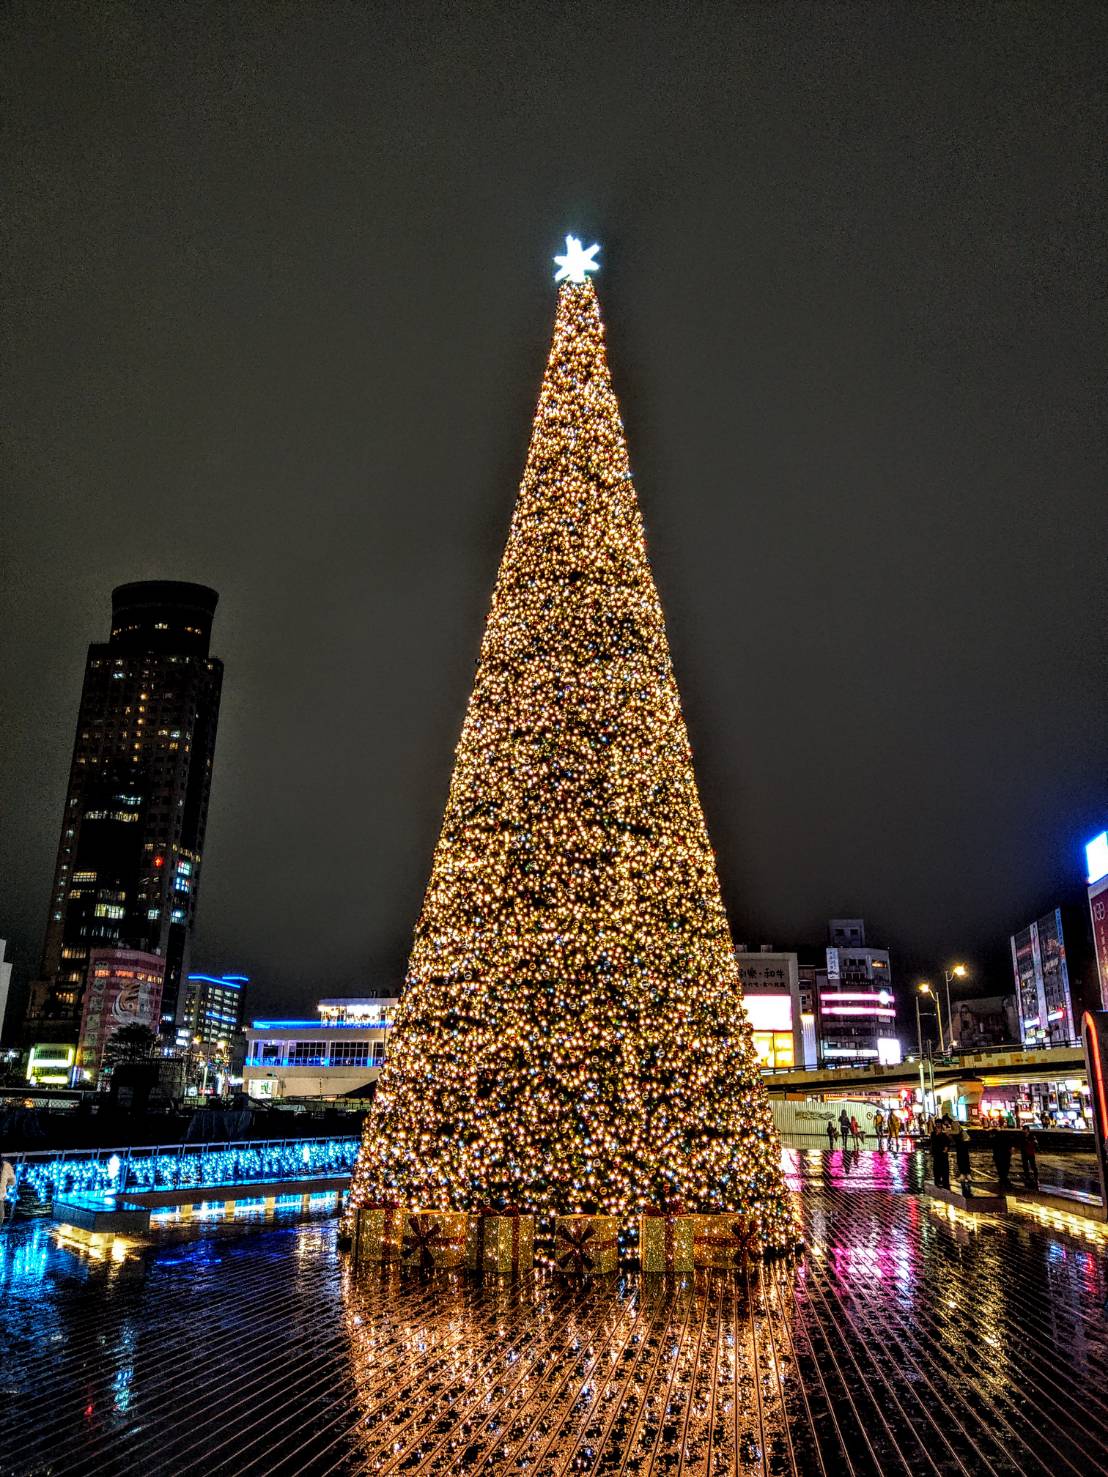 19米高聖誕樹照亮夜空